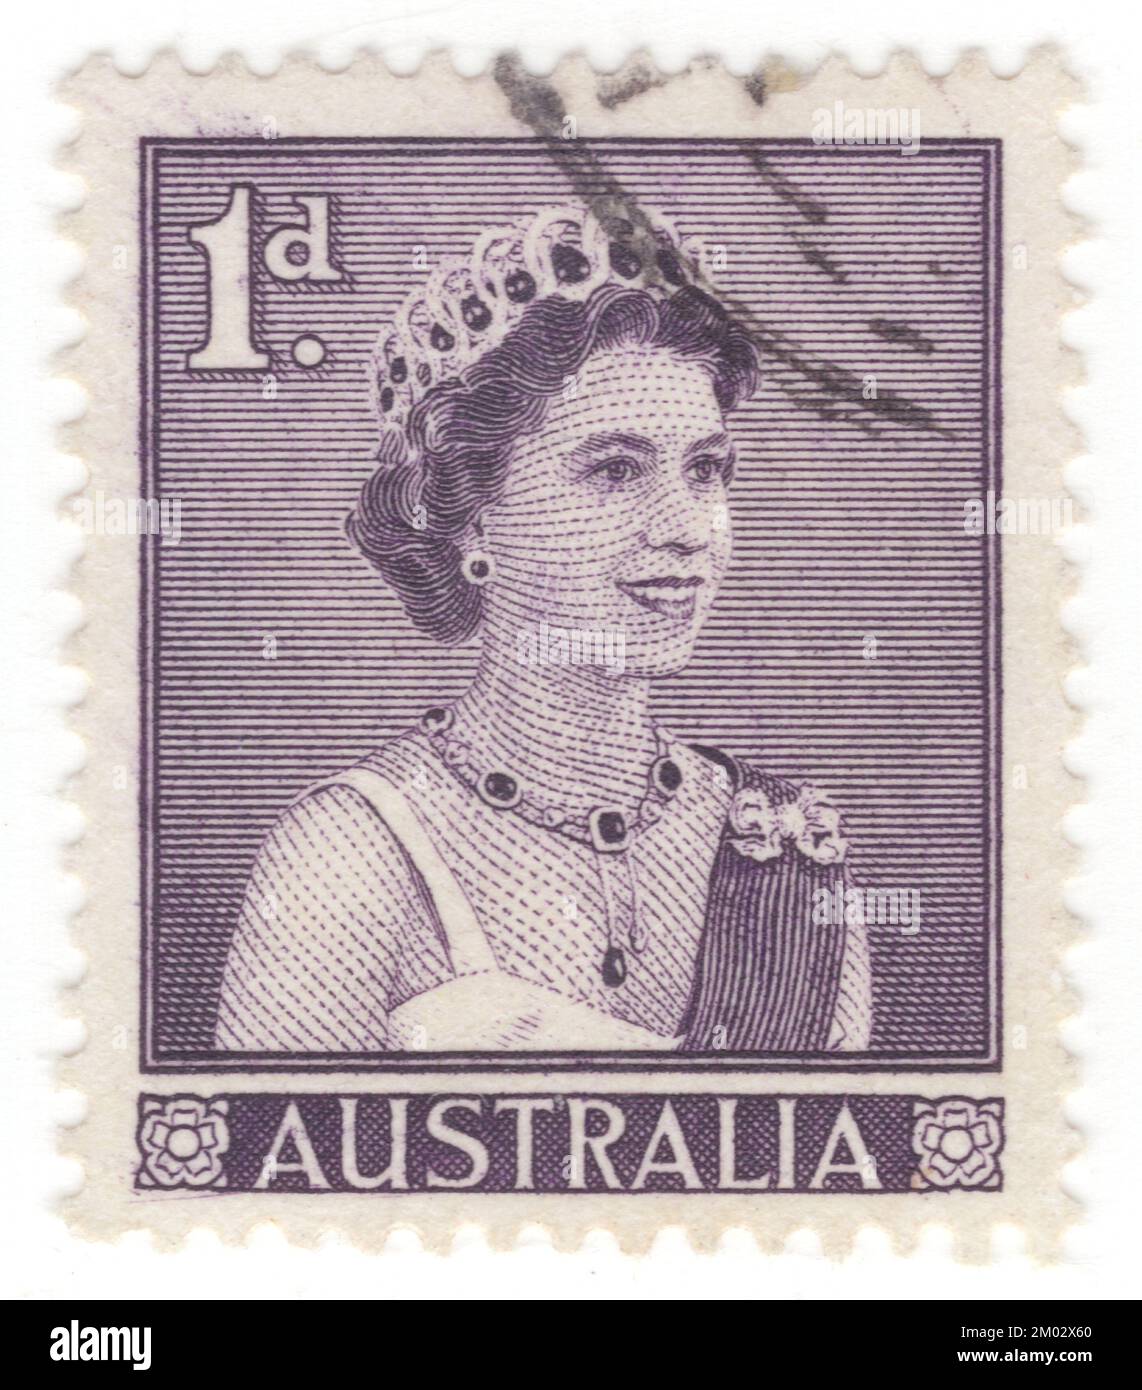 AUSTRALIE — 1959 2 février: Timbre-poste violet terne de 1 pence représentant des portraits de la reine Élisabeth II, monarque dominant de l'Australie. Elizabeth II (Elizabeth Alexandra Mary) fut reine du Royaume-Uni et d'autres royaumes du Commonwealth du 6 février 1952 jusqu'à sa mort en 2022. Elle était reine régnant de 32 États souverains au cours de sa vie, et était chef d'état de 15 royaumes au moment de sa mort. Son règne de 70 ans et 214 jours fut le plus long de tout monarque britannique et le plus long règne vérifié de tout monarque féminin de l'histoire Banque D'Images